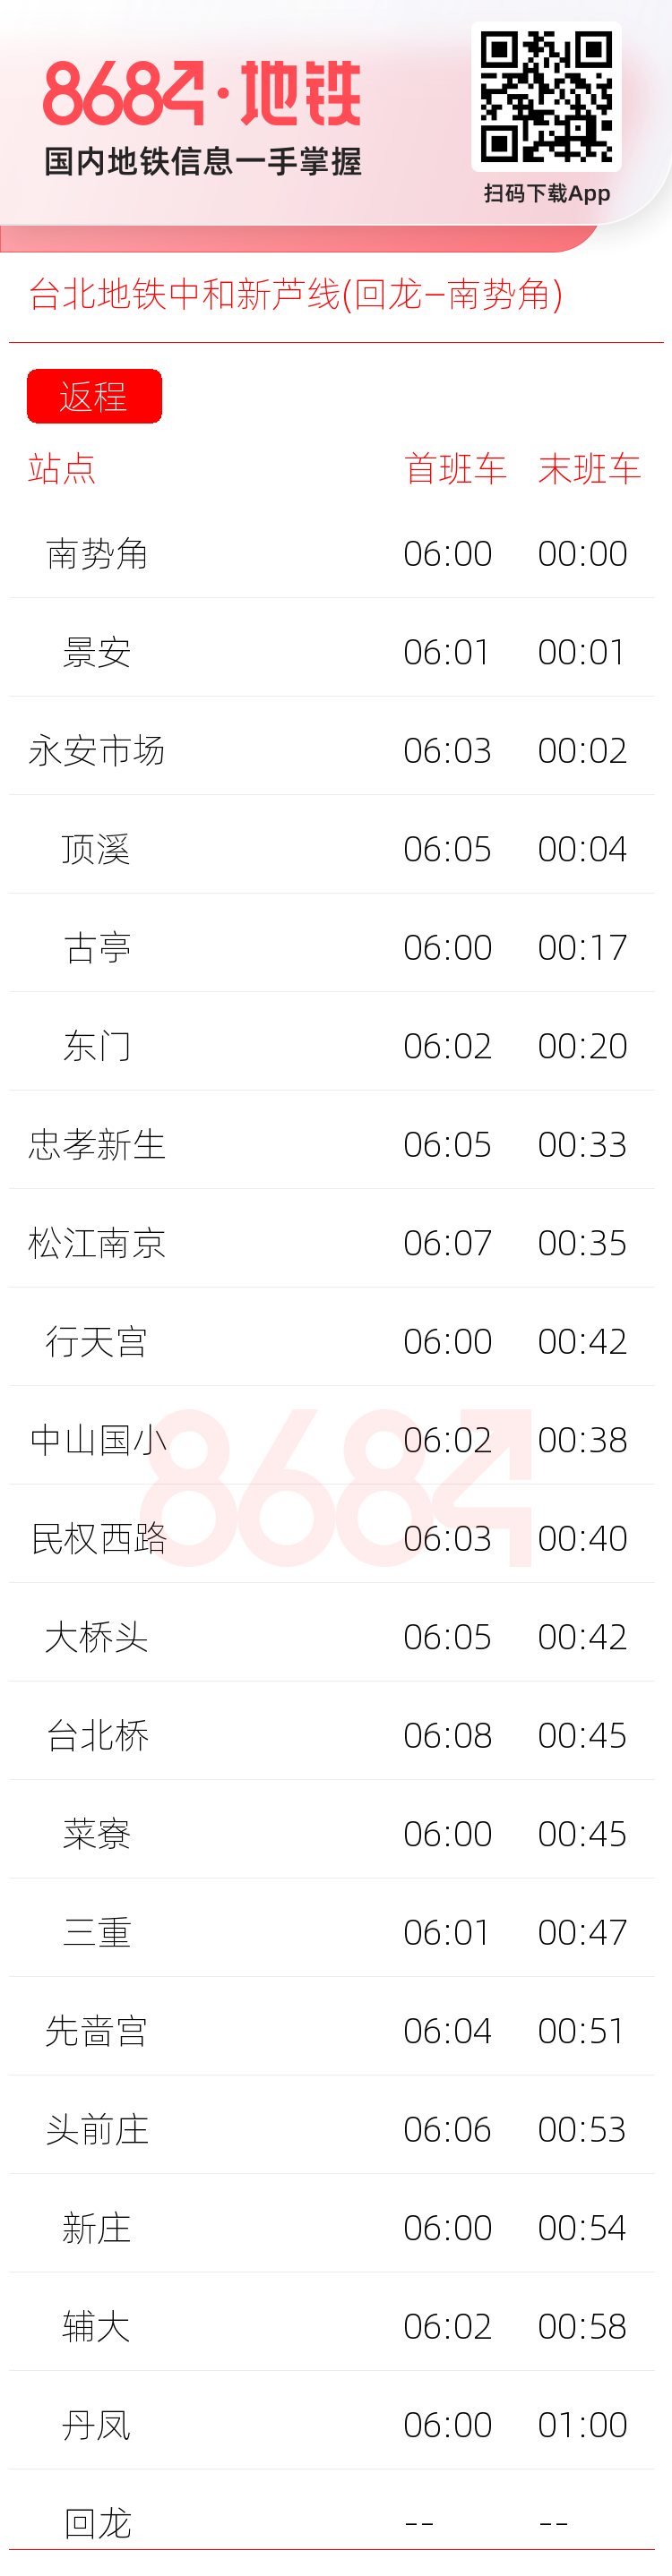 台北地铁中和新芦线(回龙—南势角)运营时间表